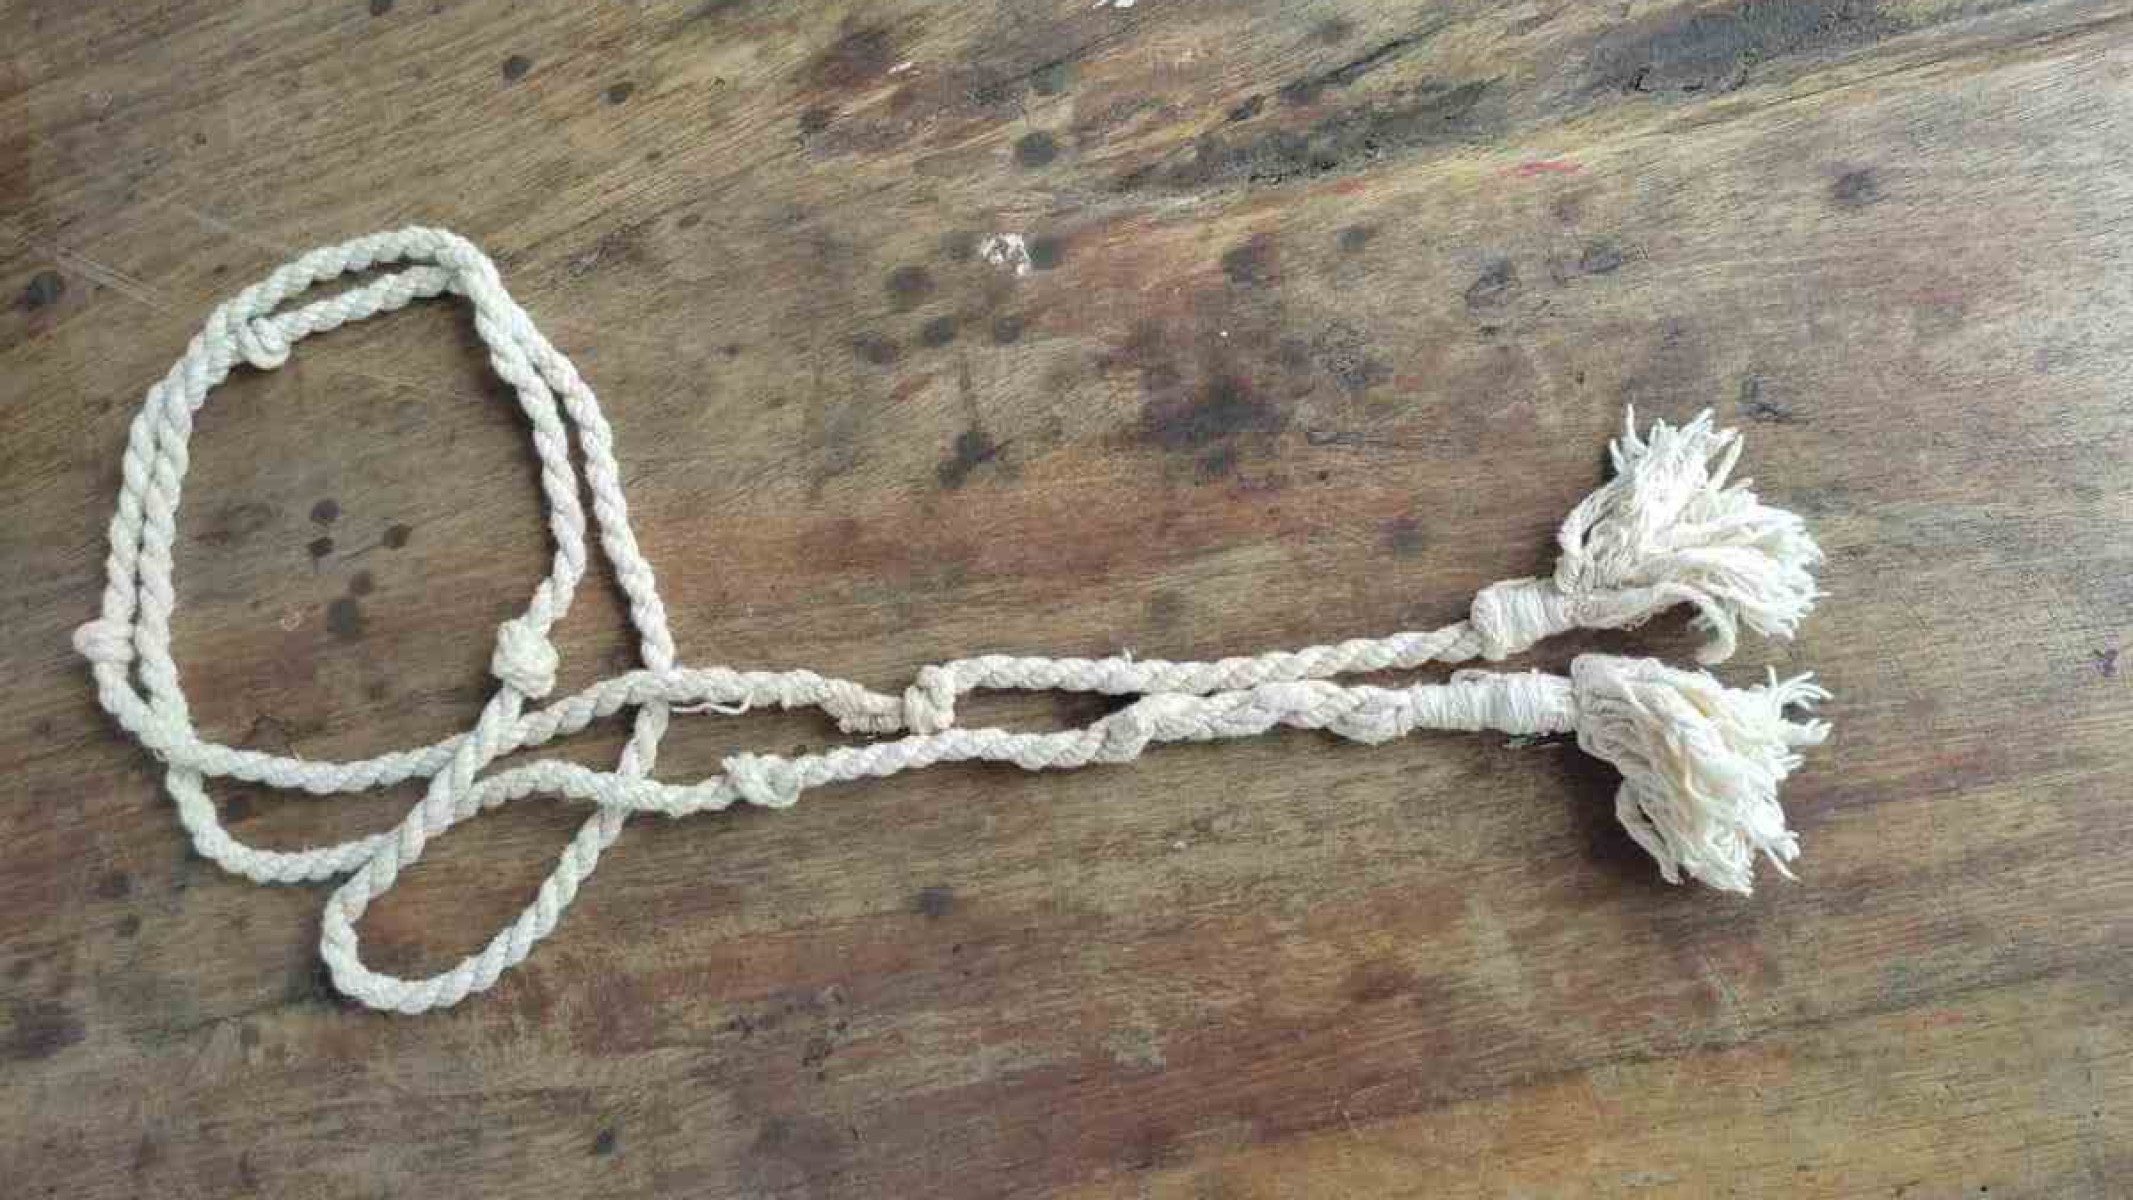 Feito em algodão em um ritual na Sexta-Feira da Paixão, cordão é objeto de devoção e purificação no histórico quilombo, na cidade de São Francisco